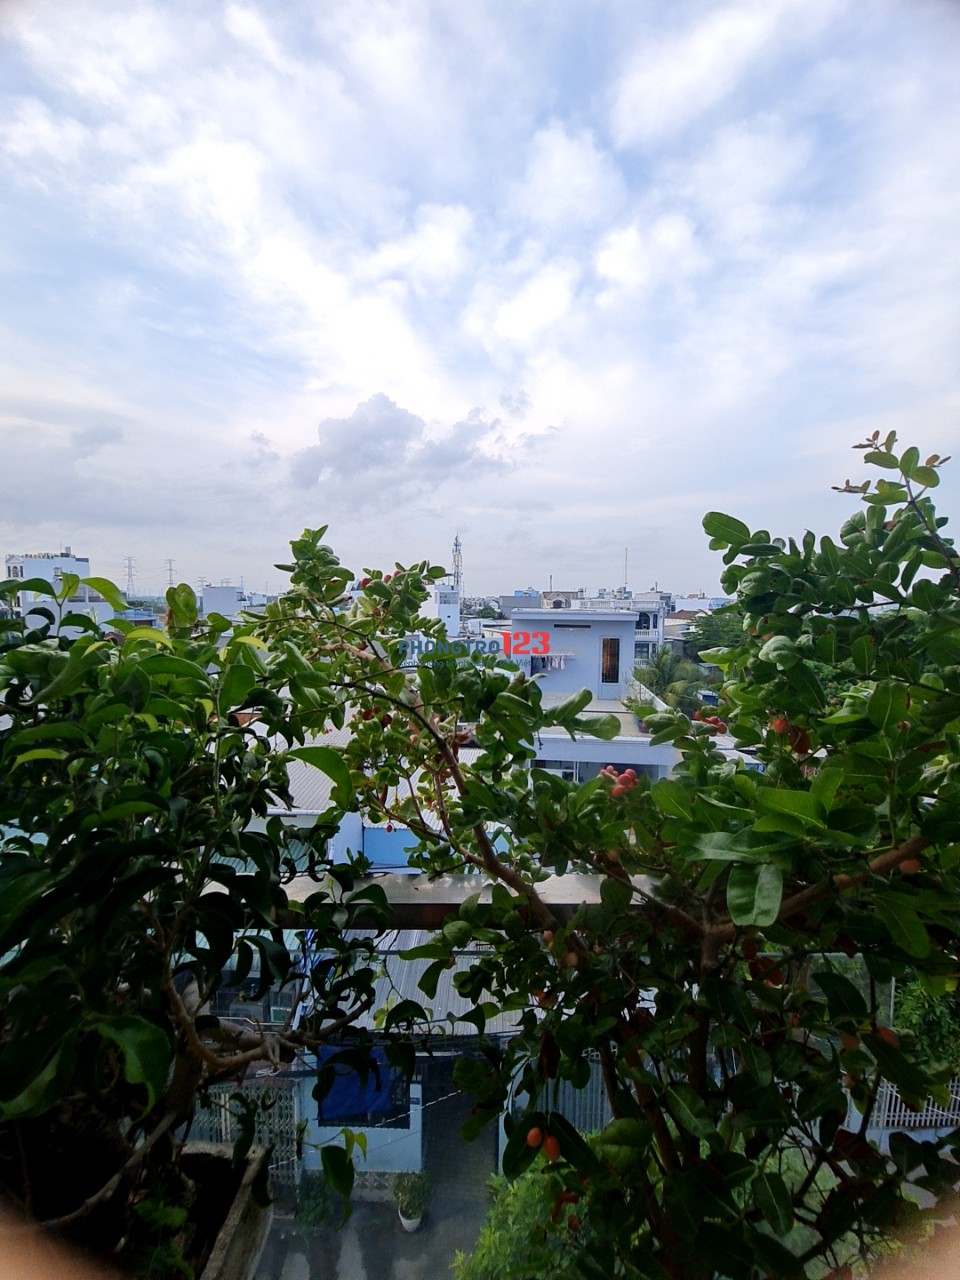 Cho thuê căn hộ dịch vụ 30m² ngay Lê Văn Lương gần Nguyễn Văn Linh giá phòng mới đẹp như hình.